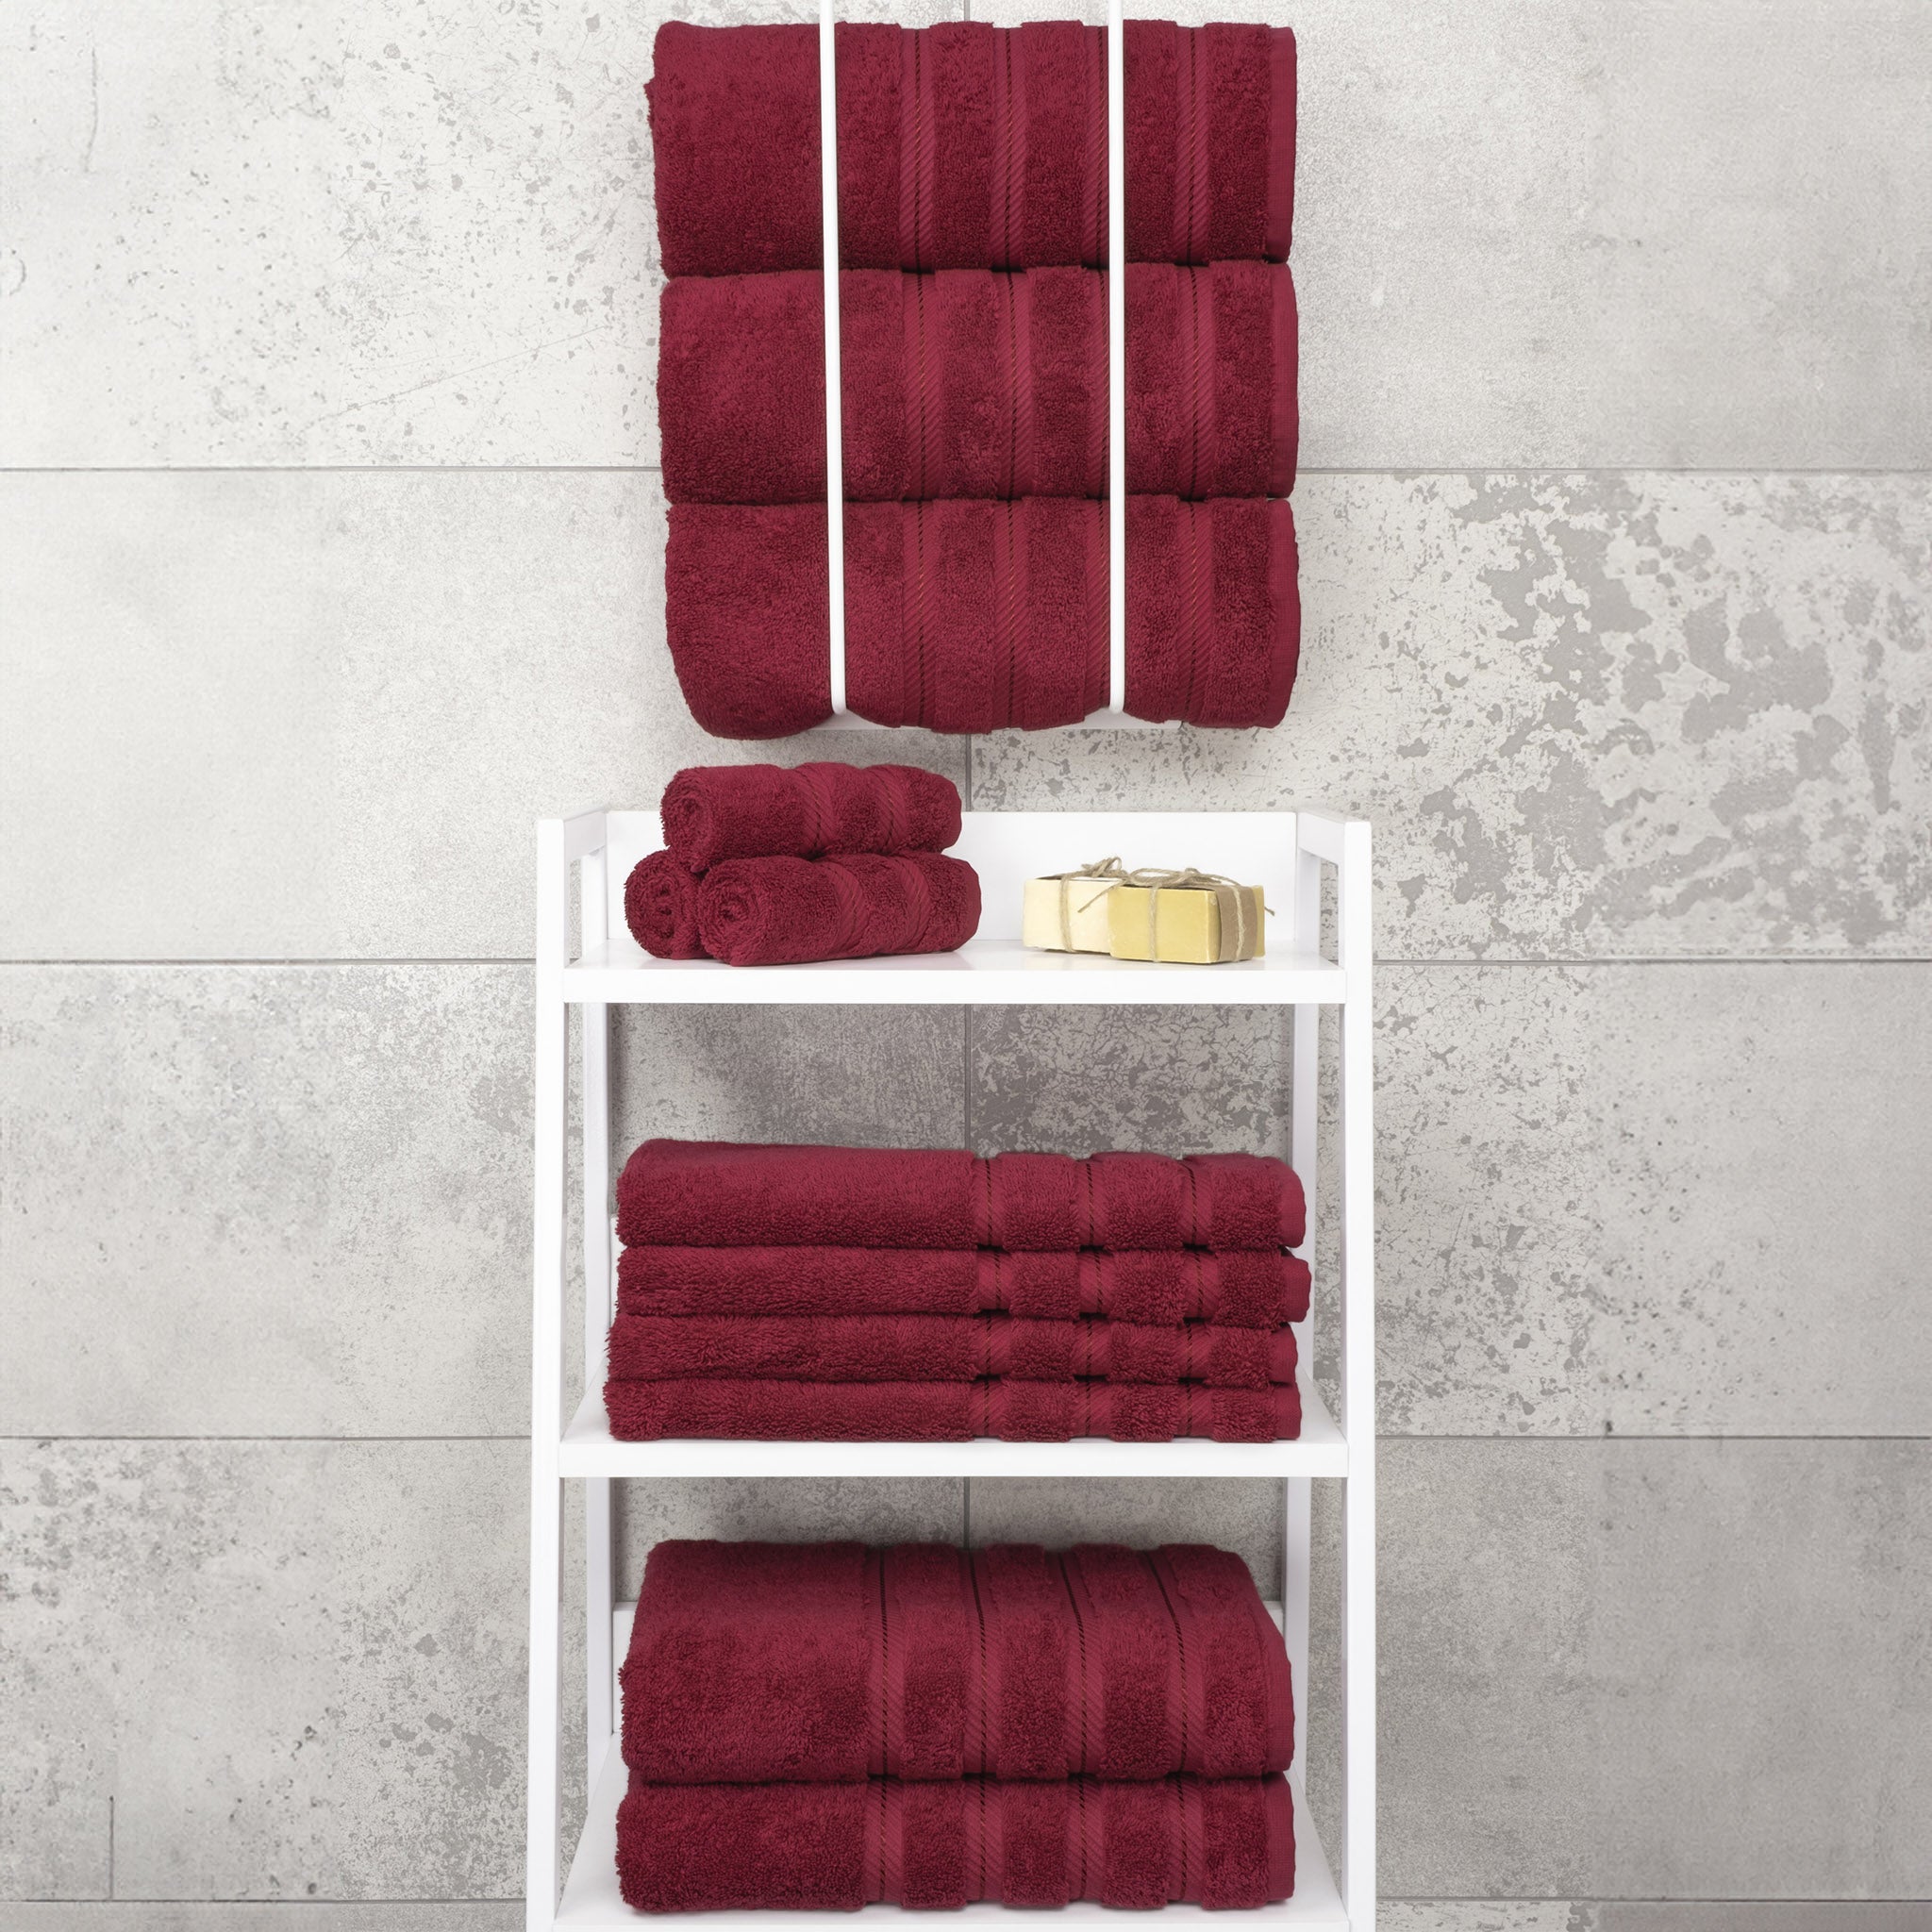 American Soft Linen 100% Turkish Cotton 4 Pack Bath Towel Set bordeaux-red-7